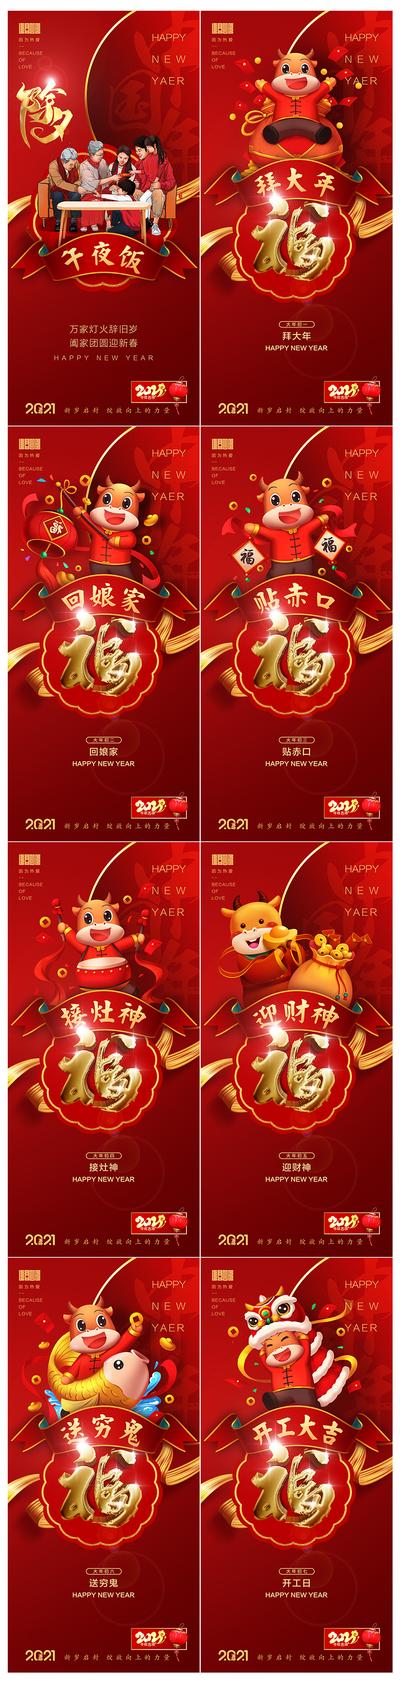 南门网 海报 中国传统节日 春节 除夕 初一 初七 年俗 福字 系列